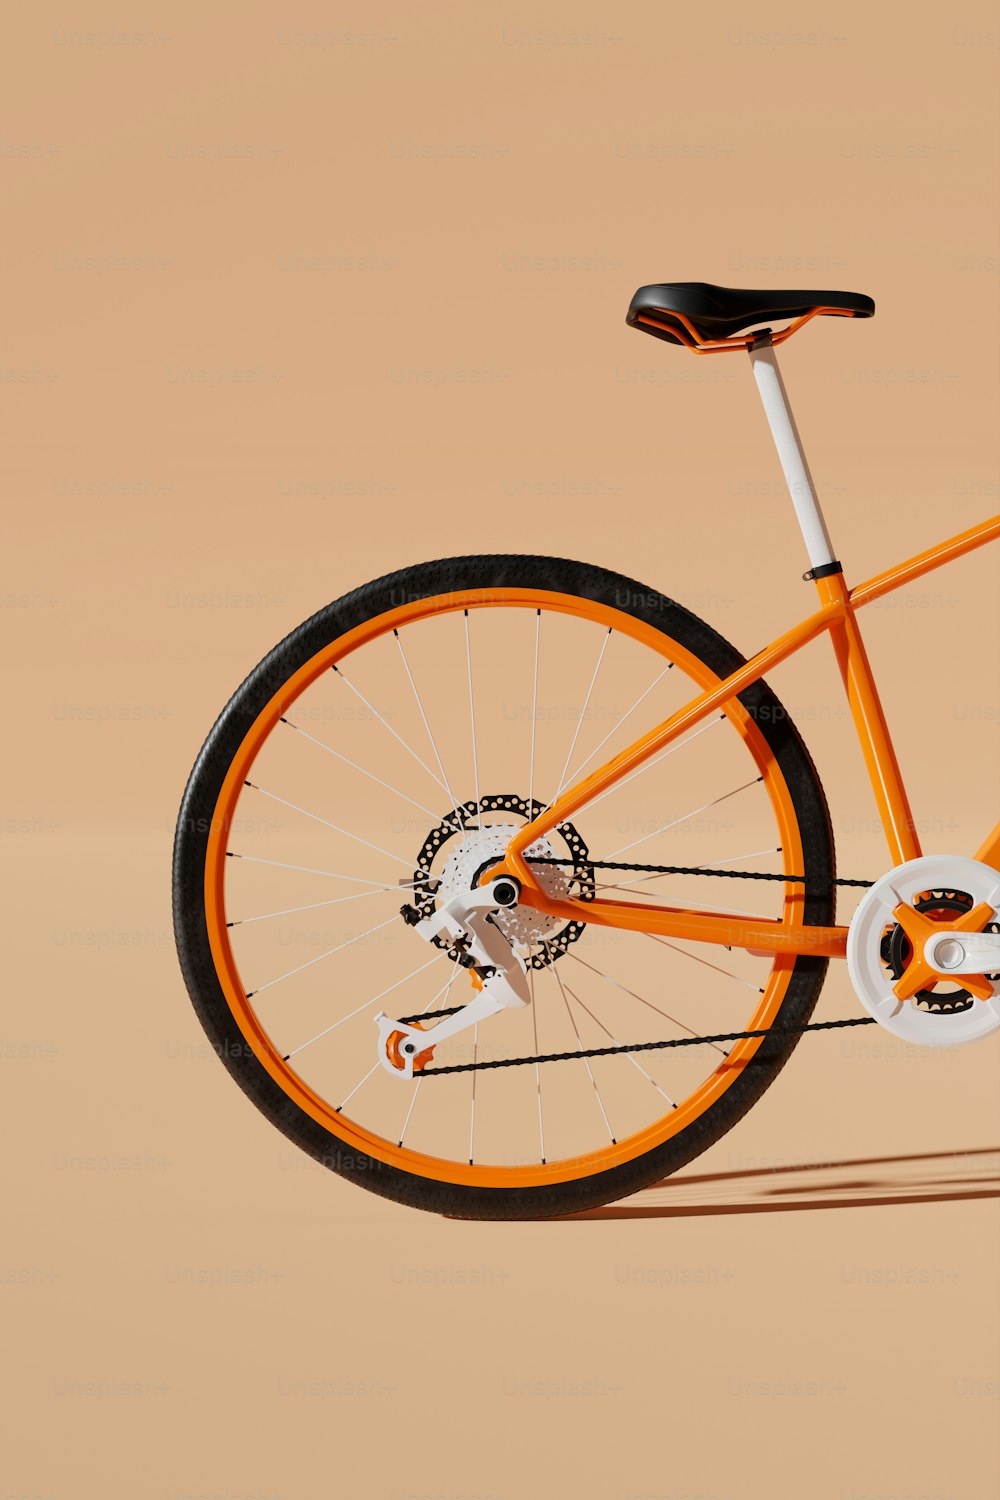 Una bici arancione e bianca è mostrata su uno sfondo marrone chiaro